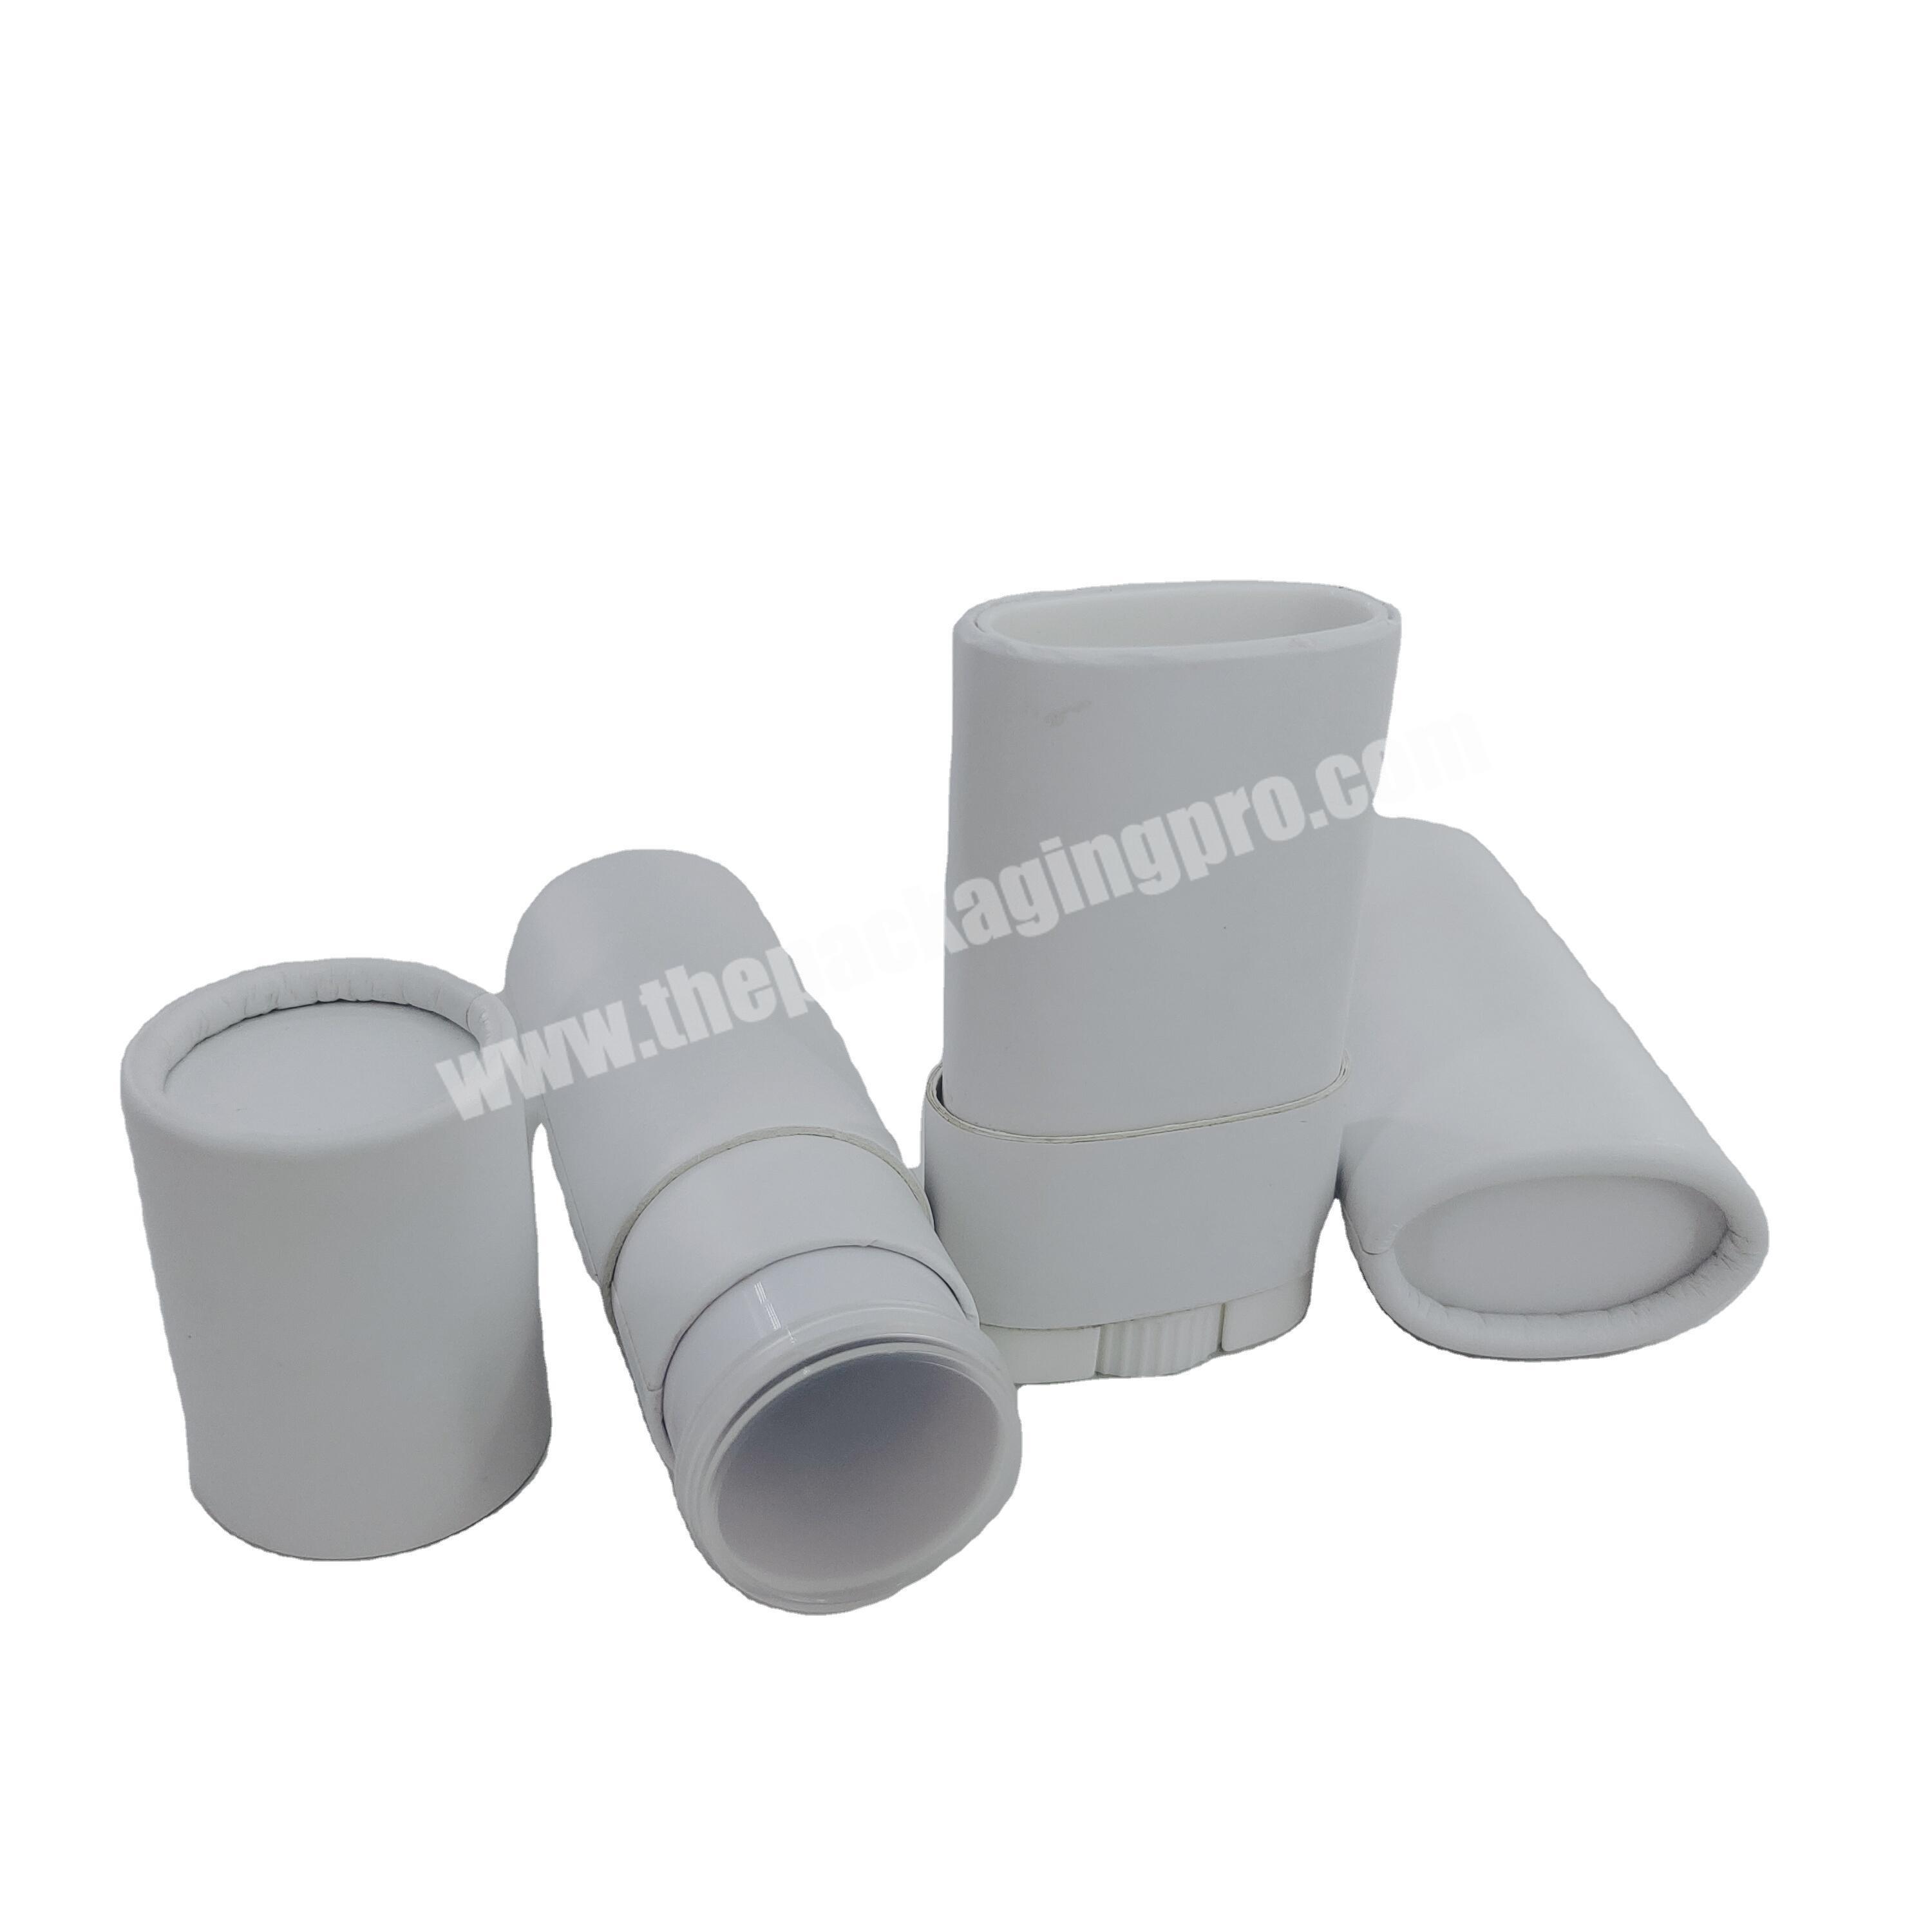 Plastic Base Paper Body Deodorant Container Paperboard Containers Twist Up Paper Deodorant Tubes